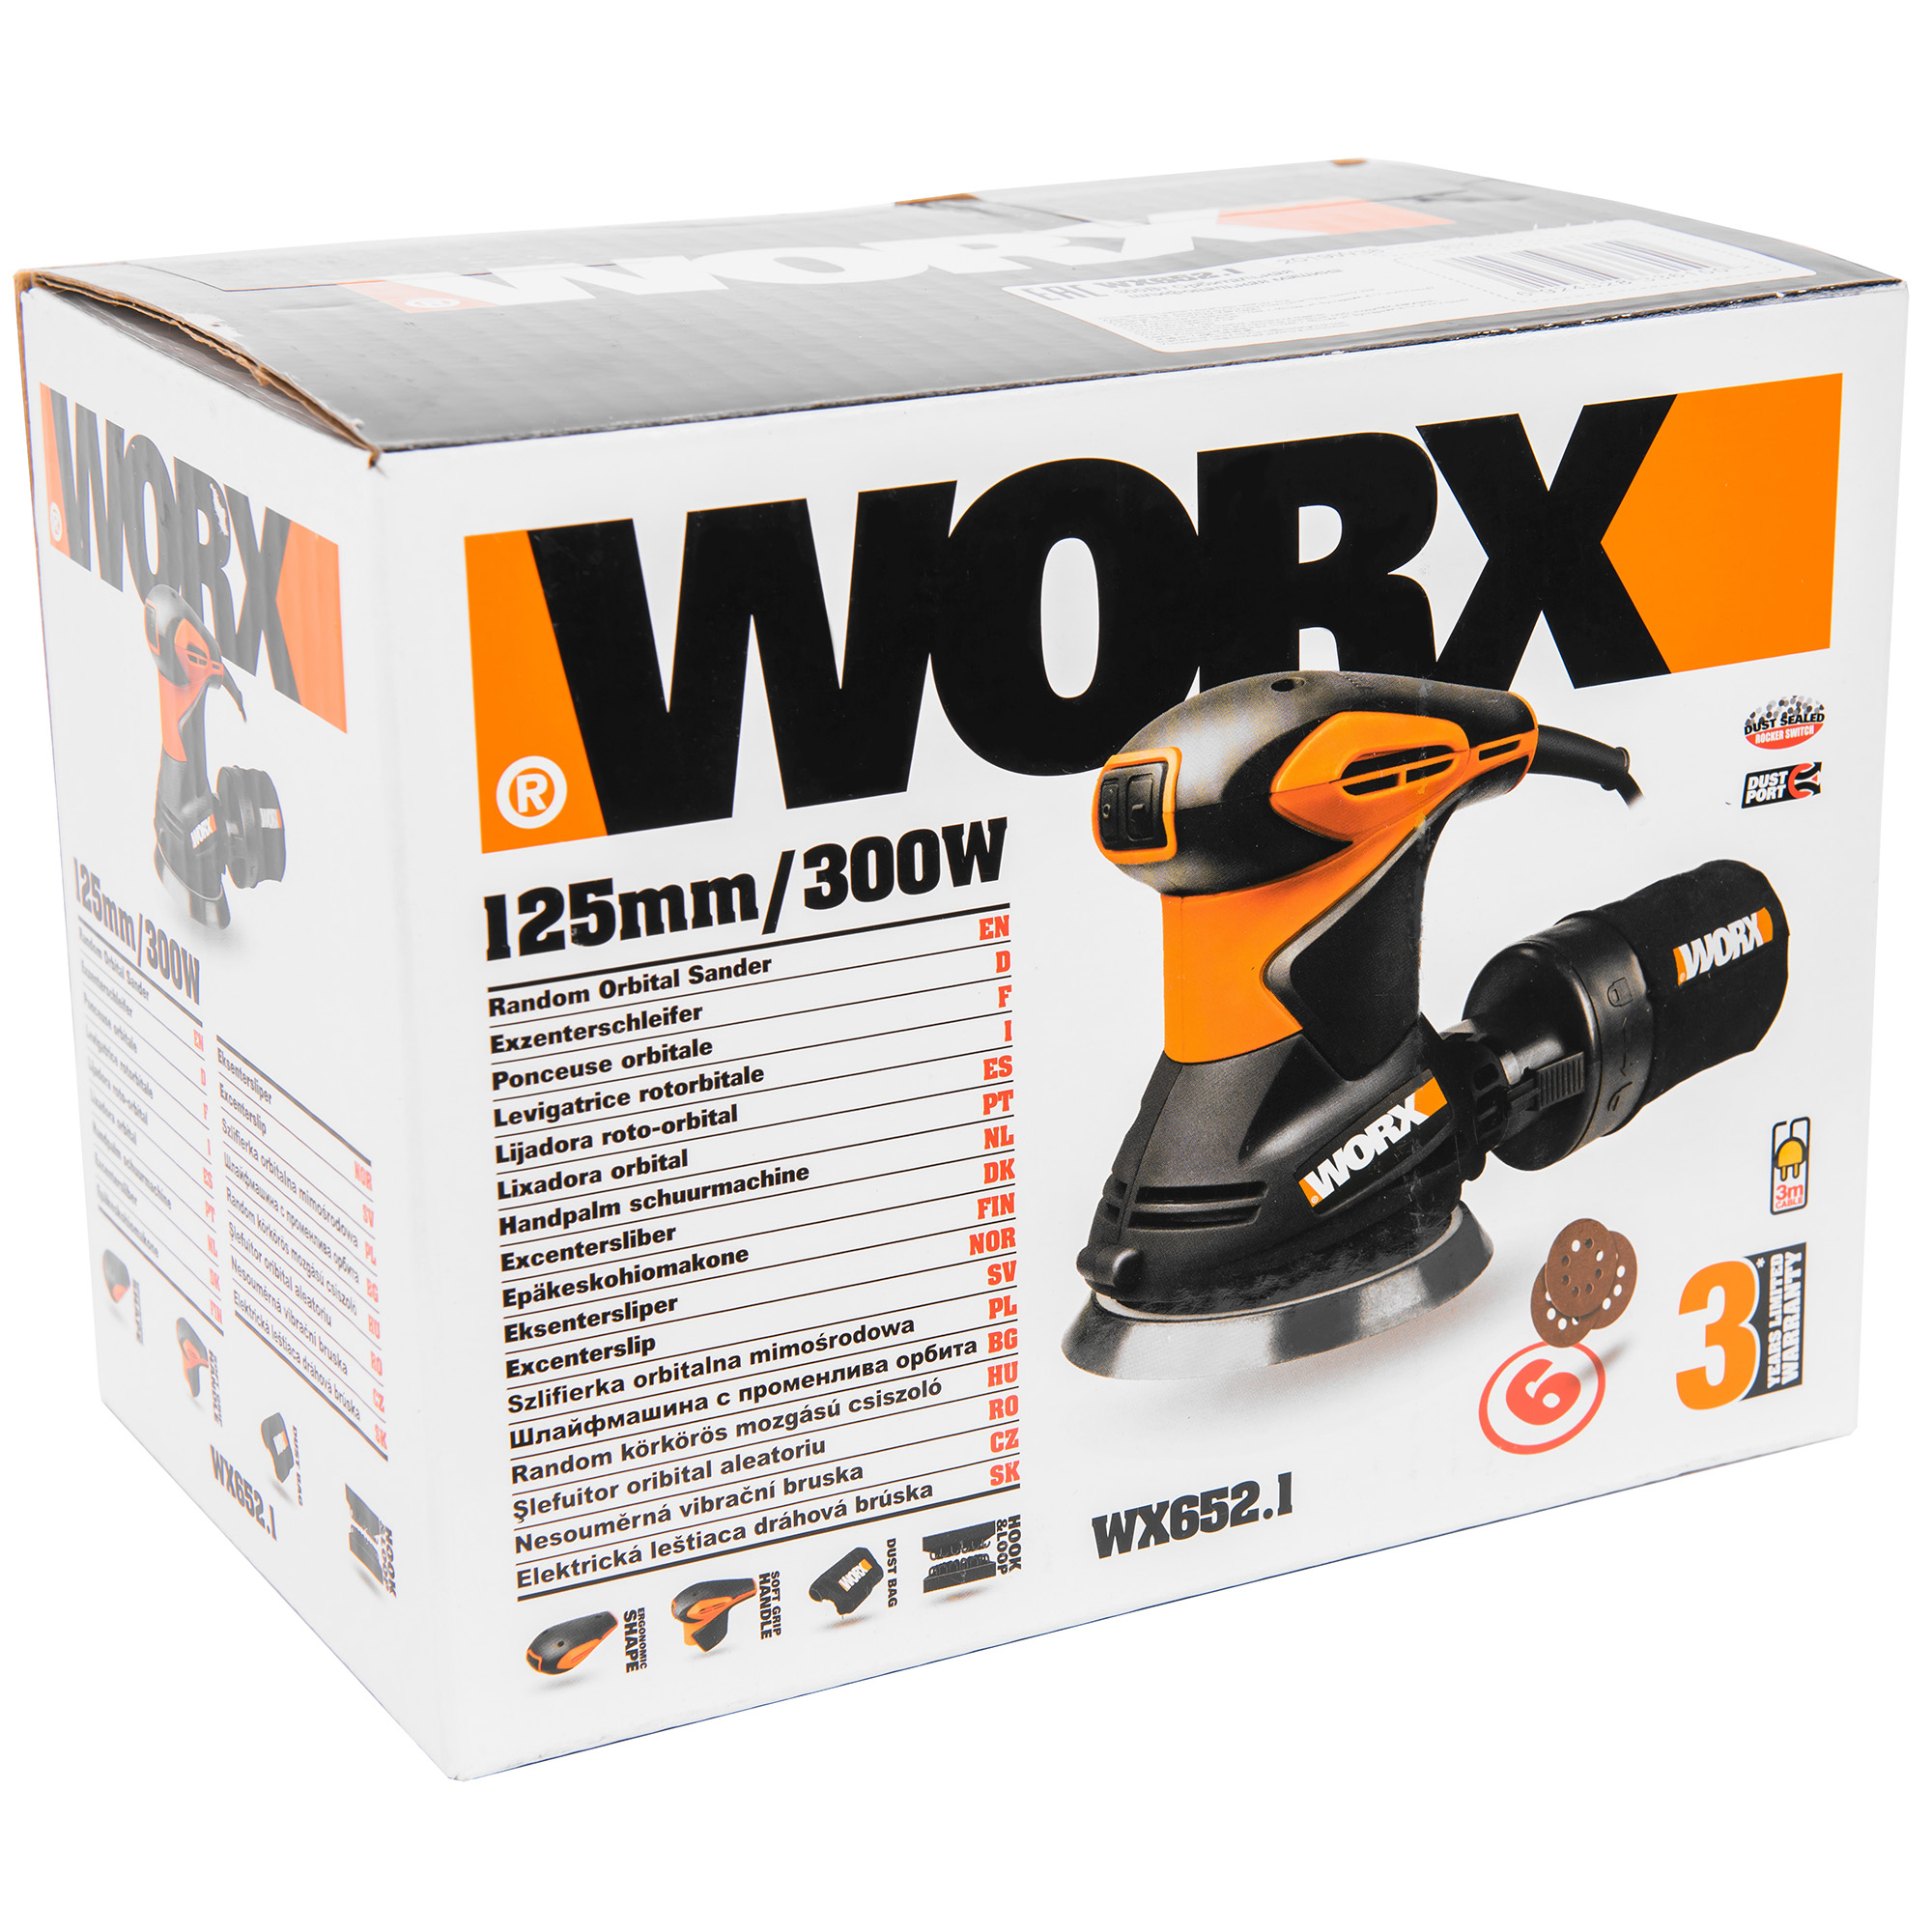 Эксцентриковая шлифовальная машина WORX WX652.1, цвет оранжевый - фото 6